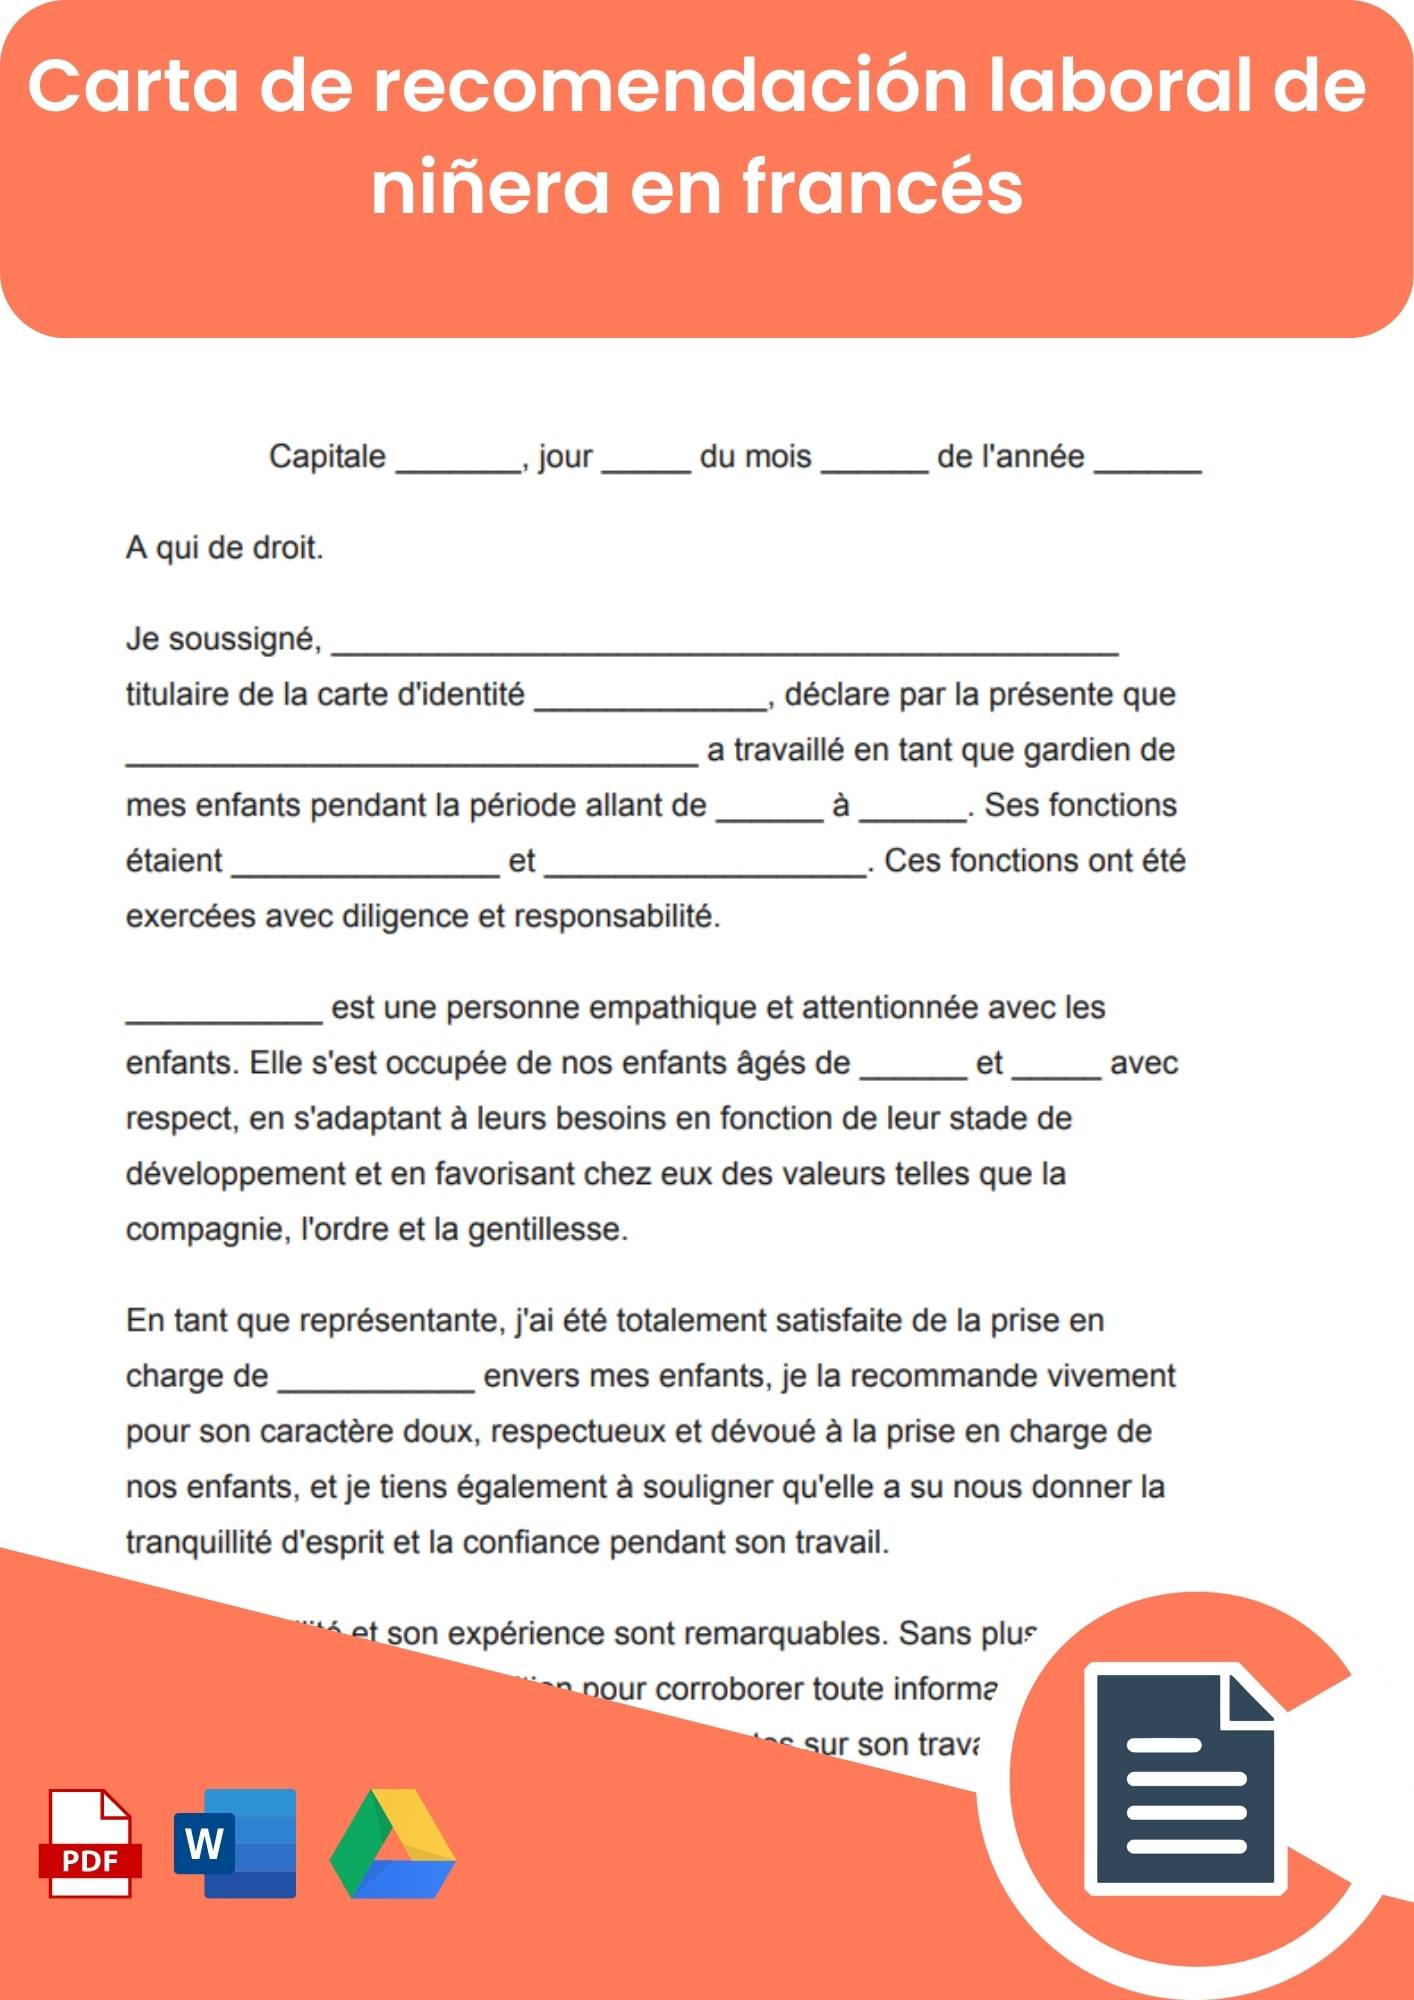 Carta de recomendación laboral para cuidadora de niños en francés